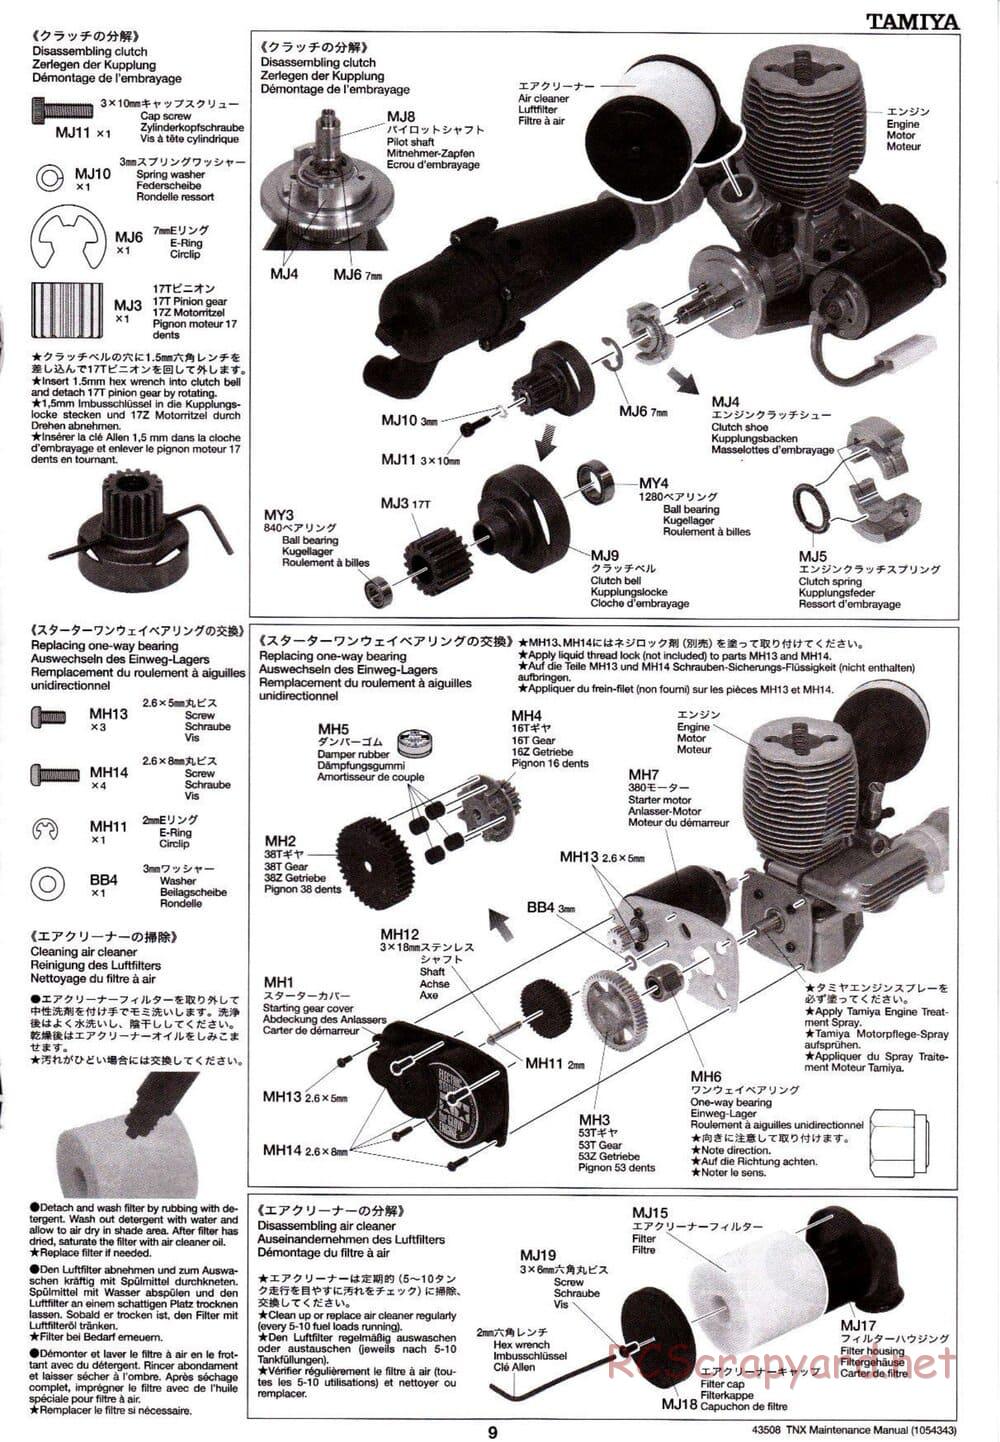 Tamiya - TNX - Maintenance Manual - Page 9